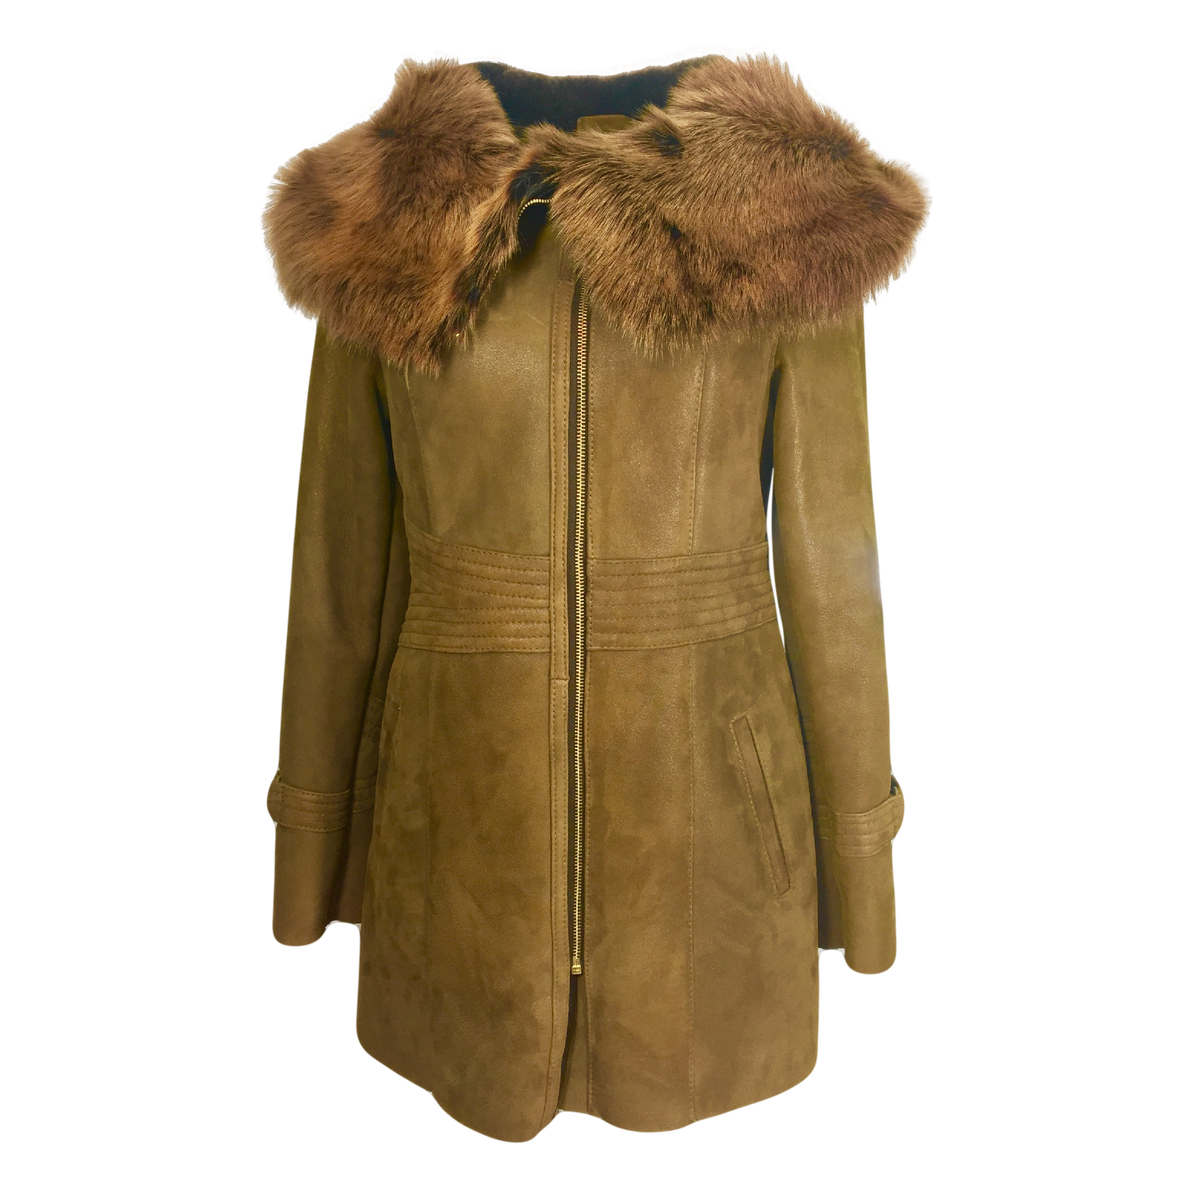 Fur Lined Leather Jacket Transparent Background